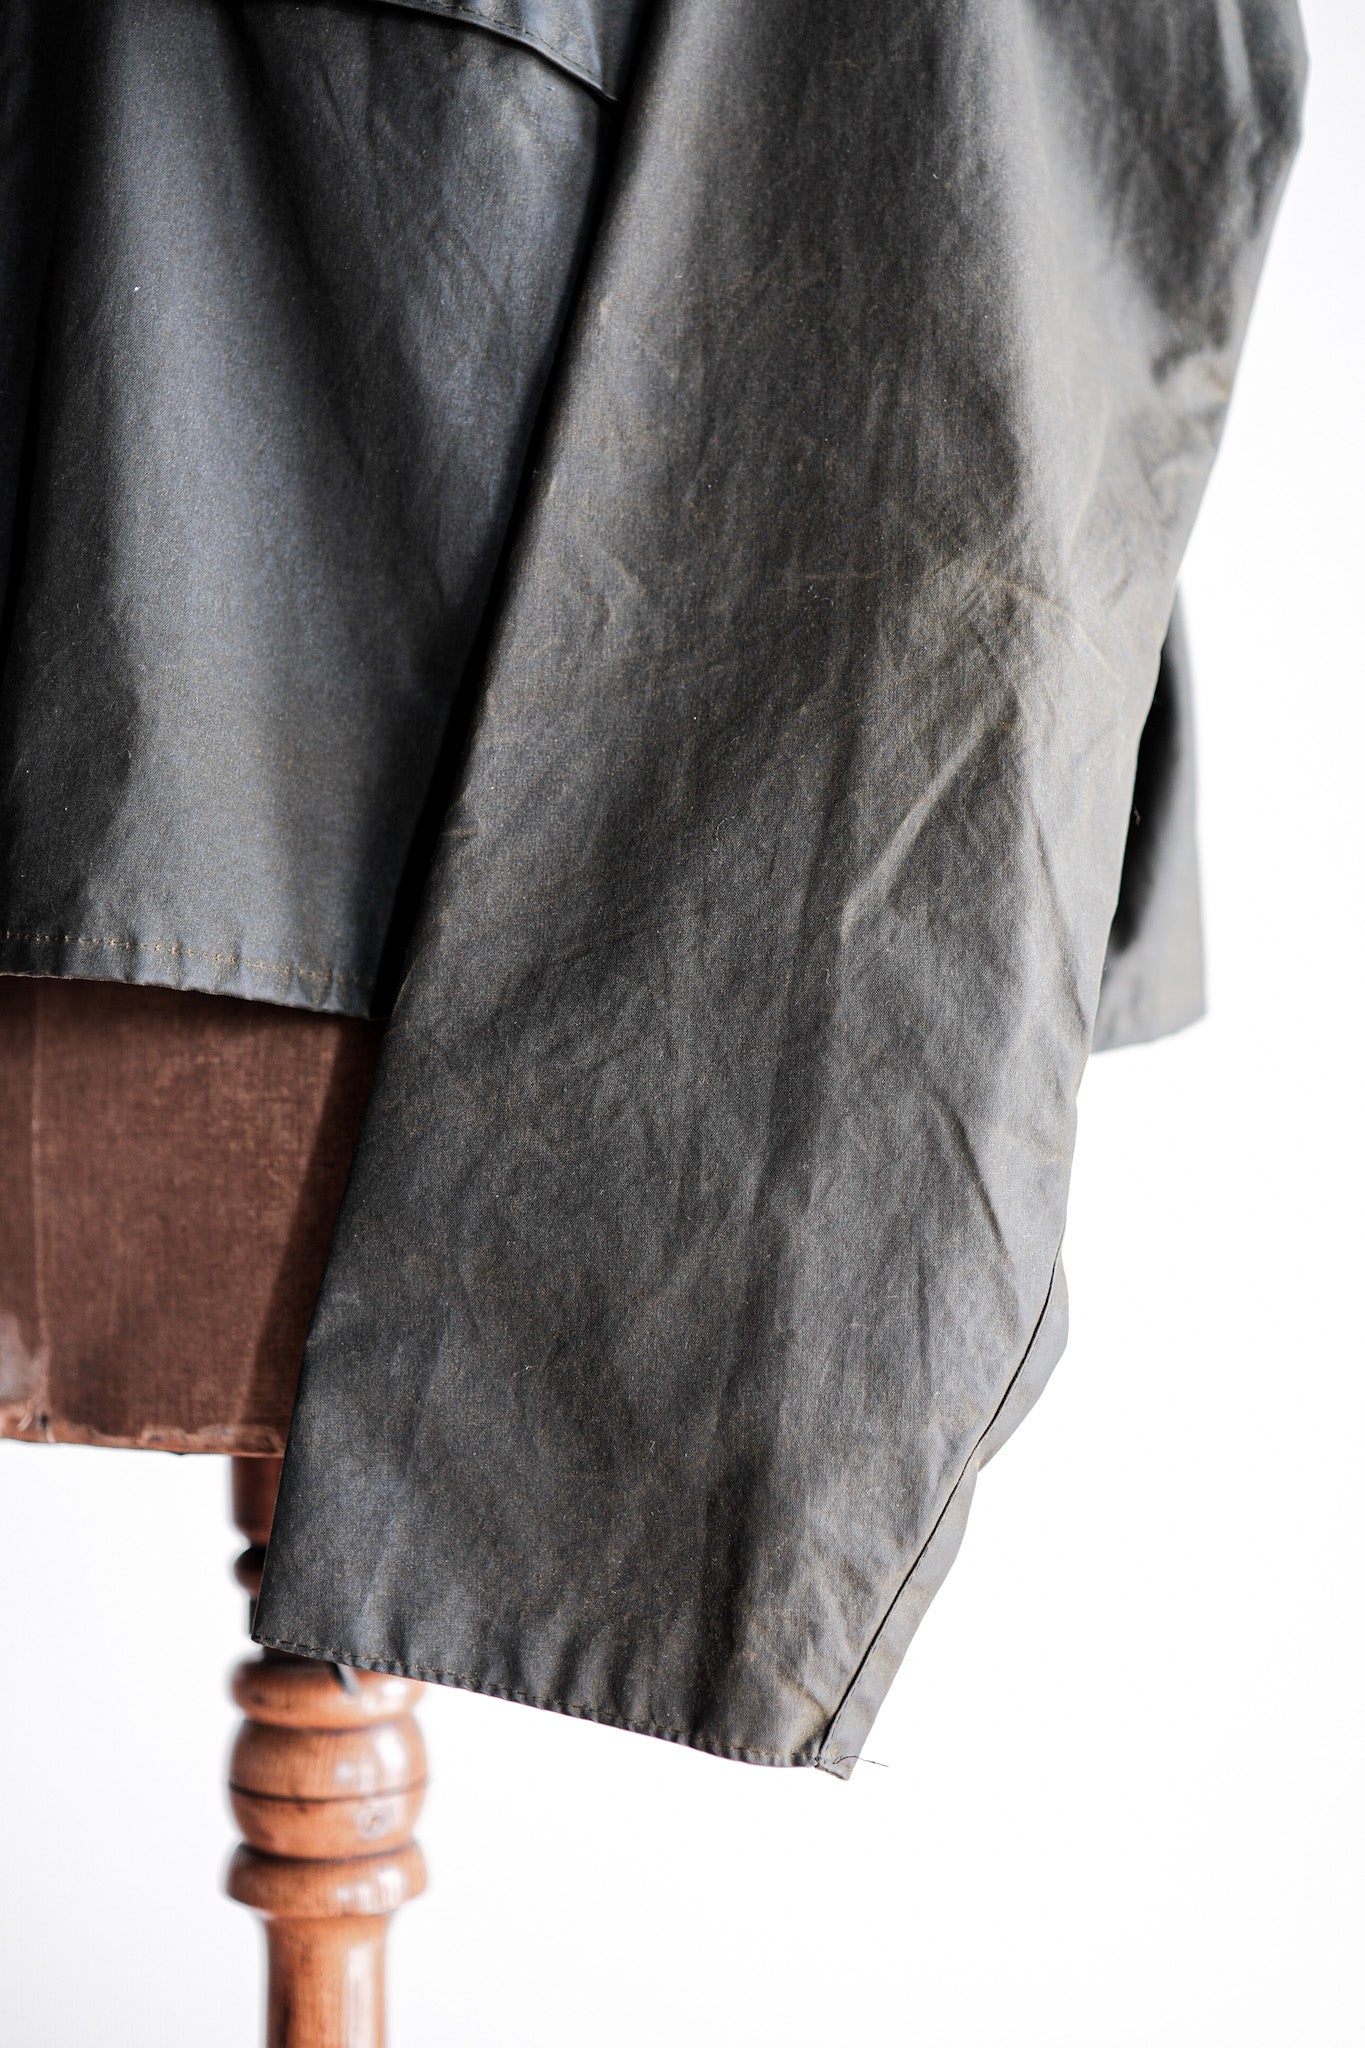 [~ 90 년대] 빈티지 바버 "스파이 재킷"3 크레스트 크기.